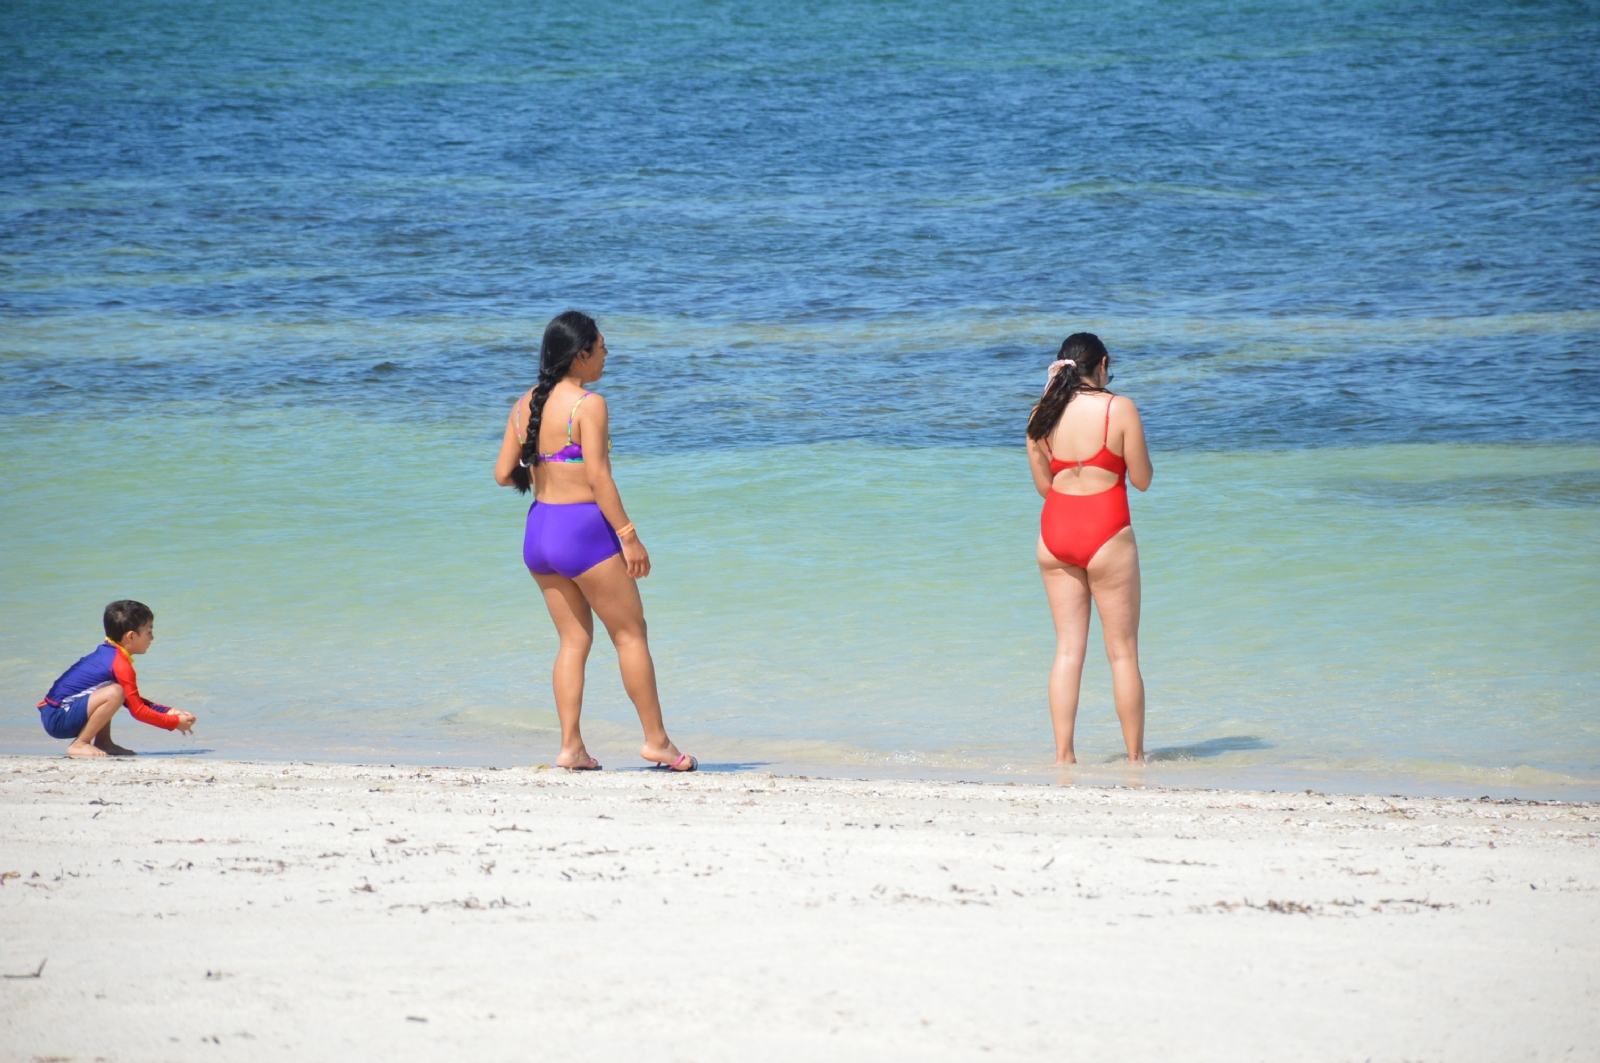 Playas de Campeche, aptas para uso recreativo en Verano: Copriscam